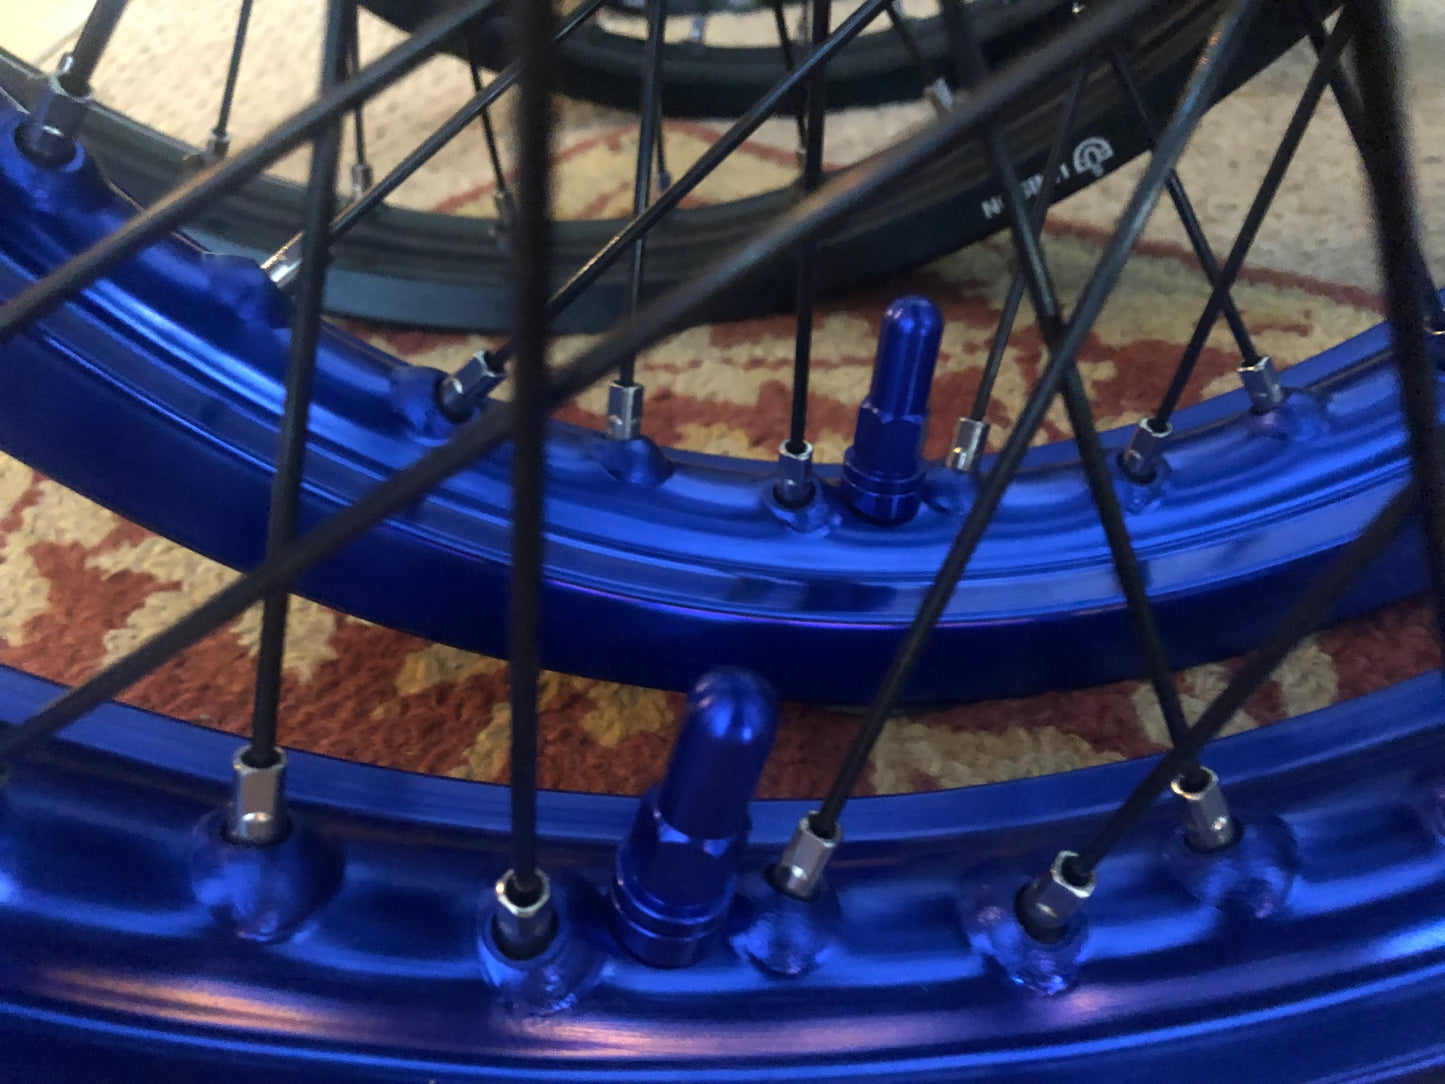 16"- 19" Surron Segway wheelset